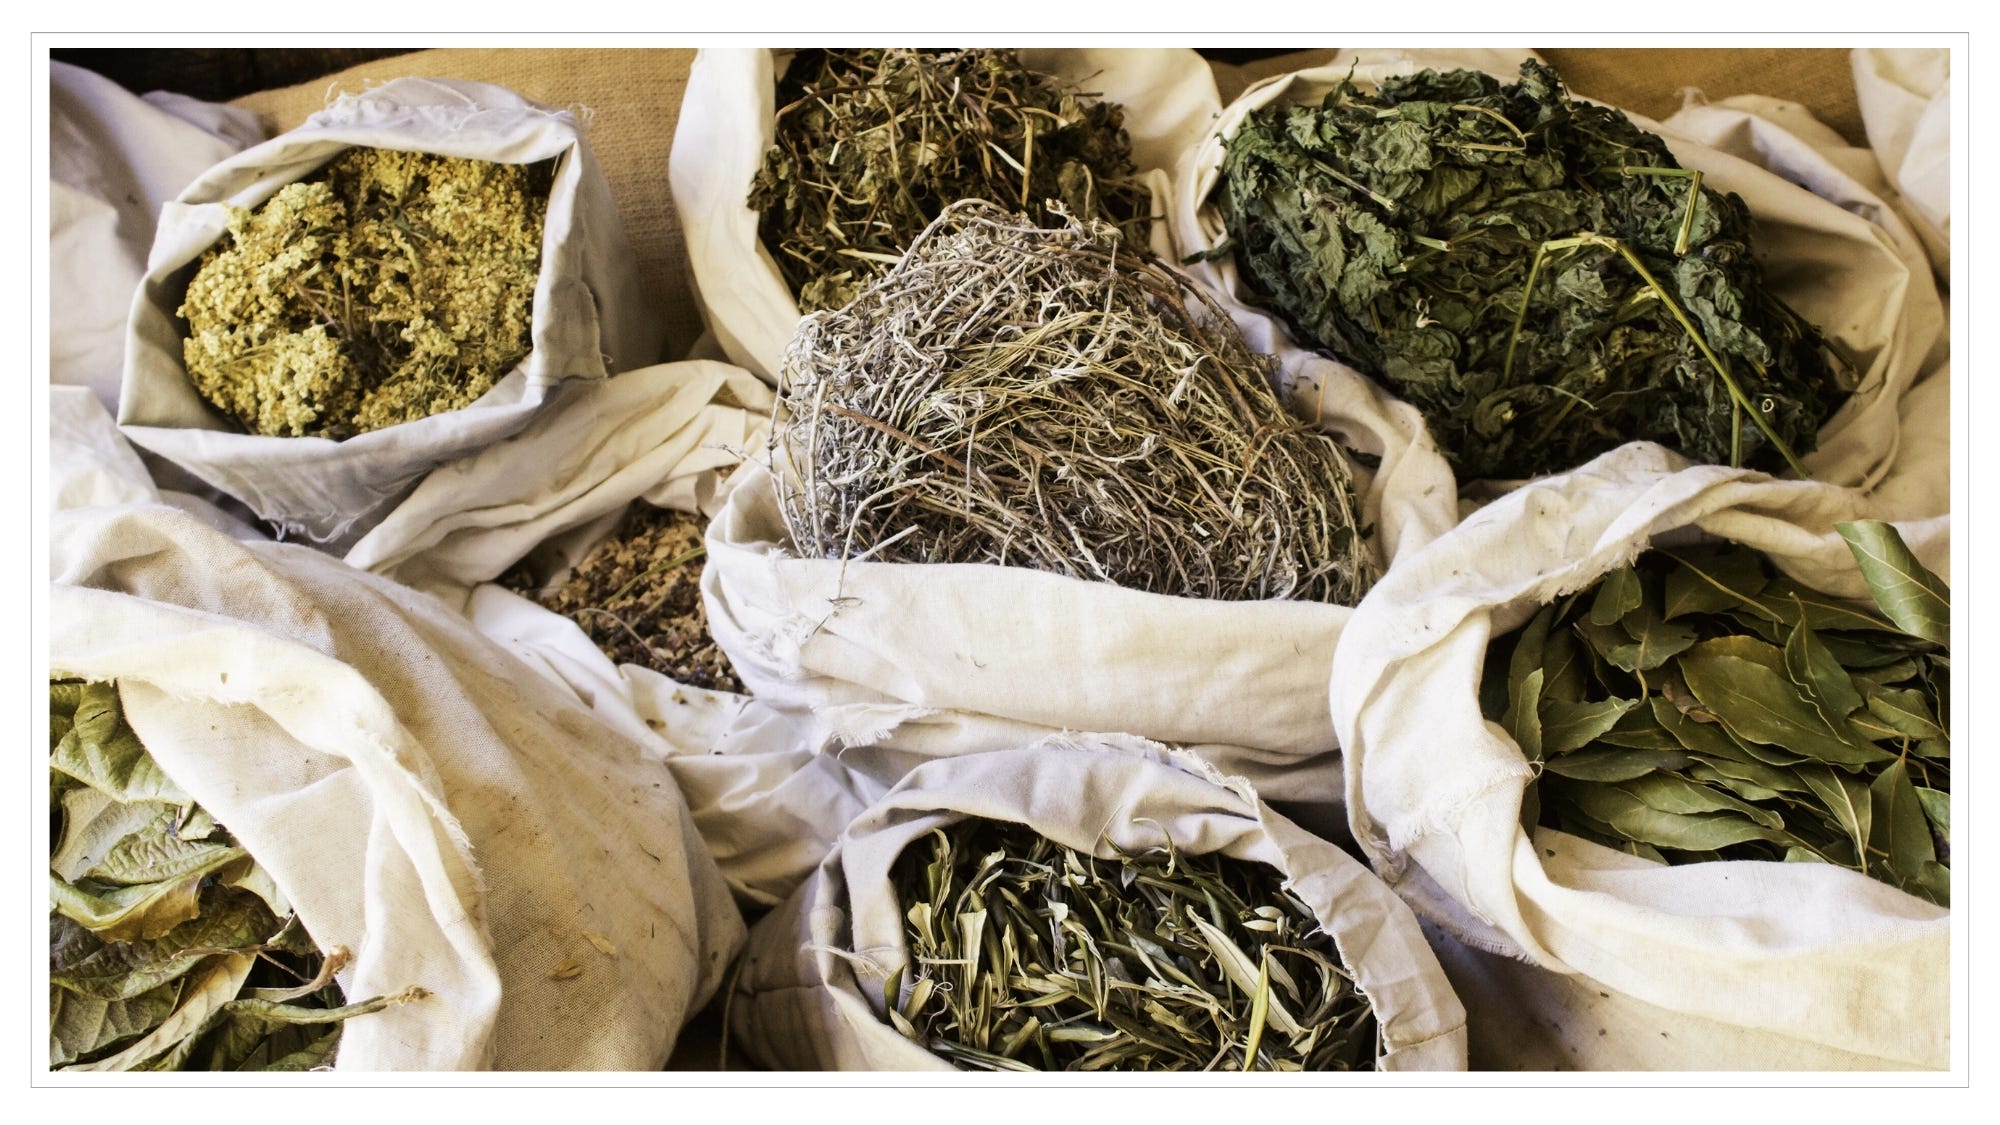 Muslin bags of dried herbal leaves